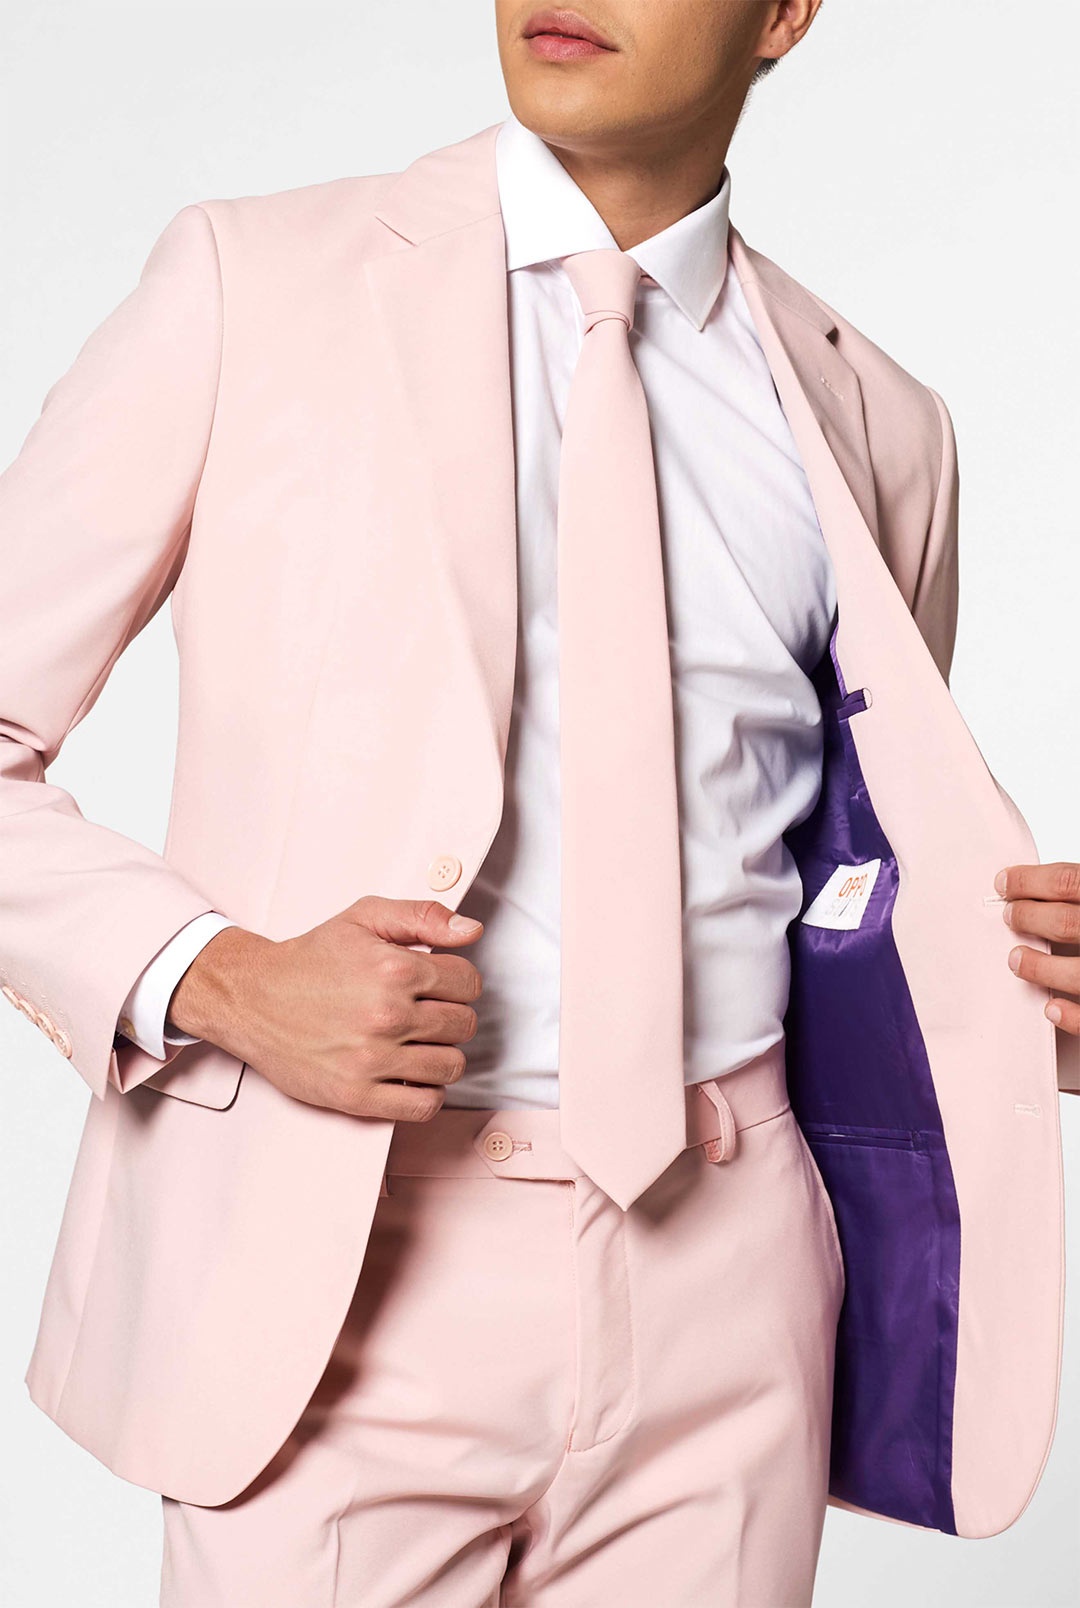 Lush Blush, Pink Suit